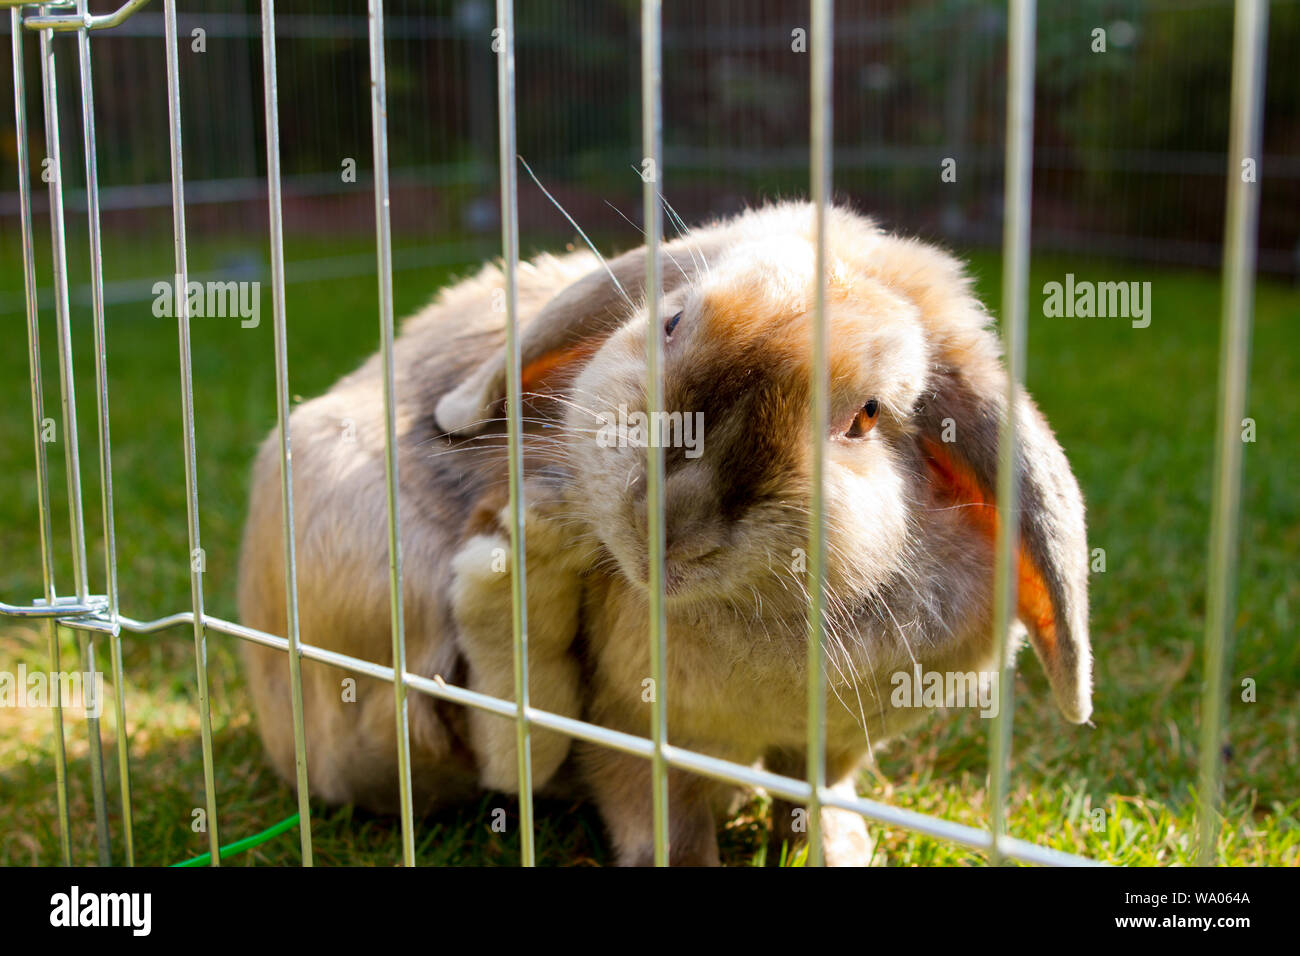 Kaninchen putzt sich, 30019397 *** Local Caption *** Stock Photo